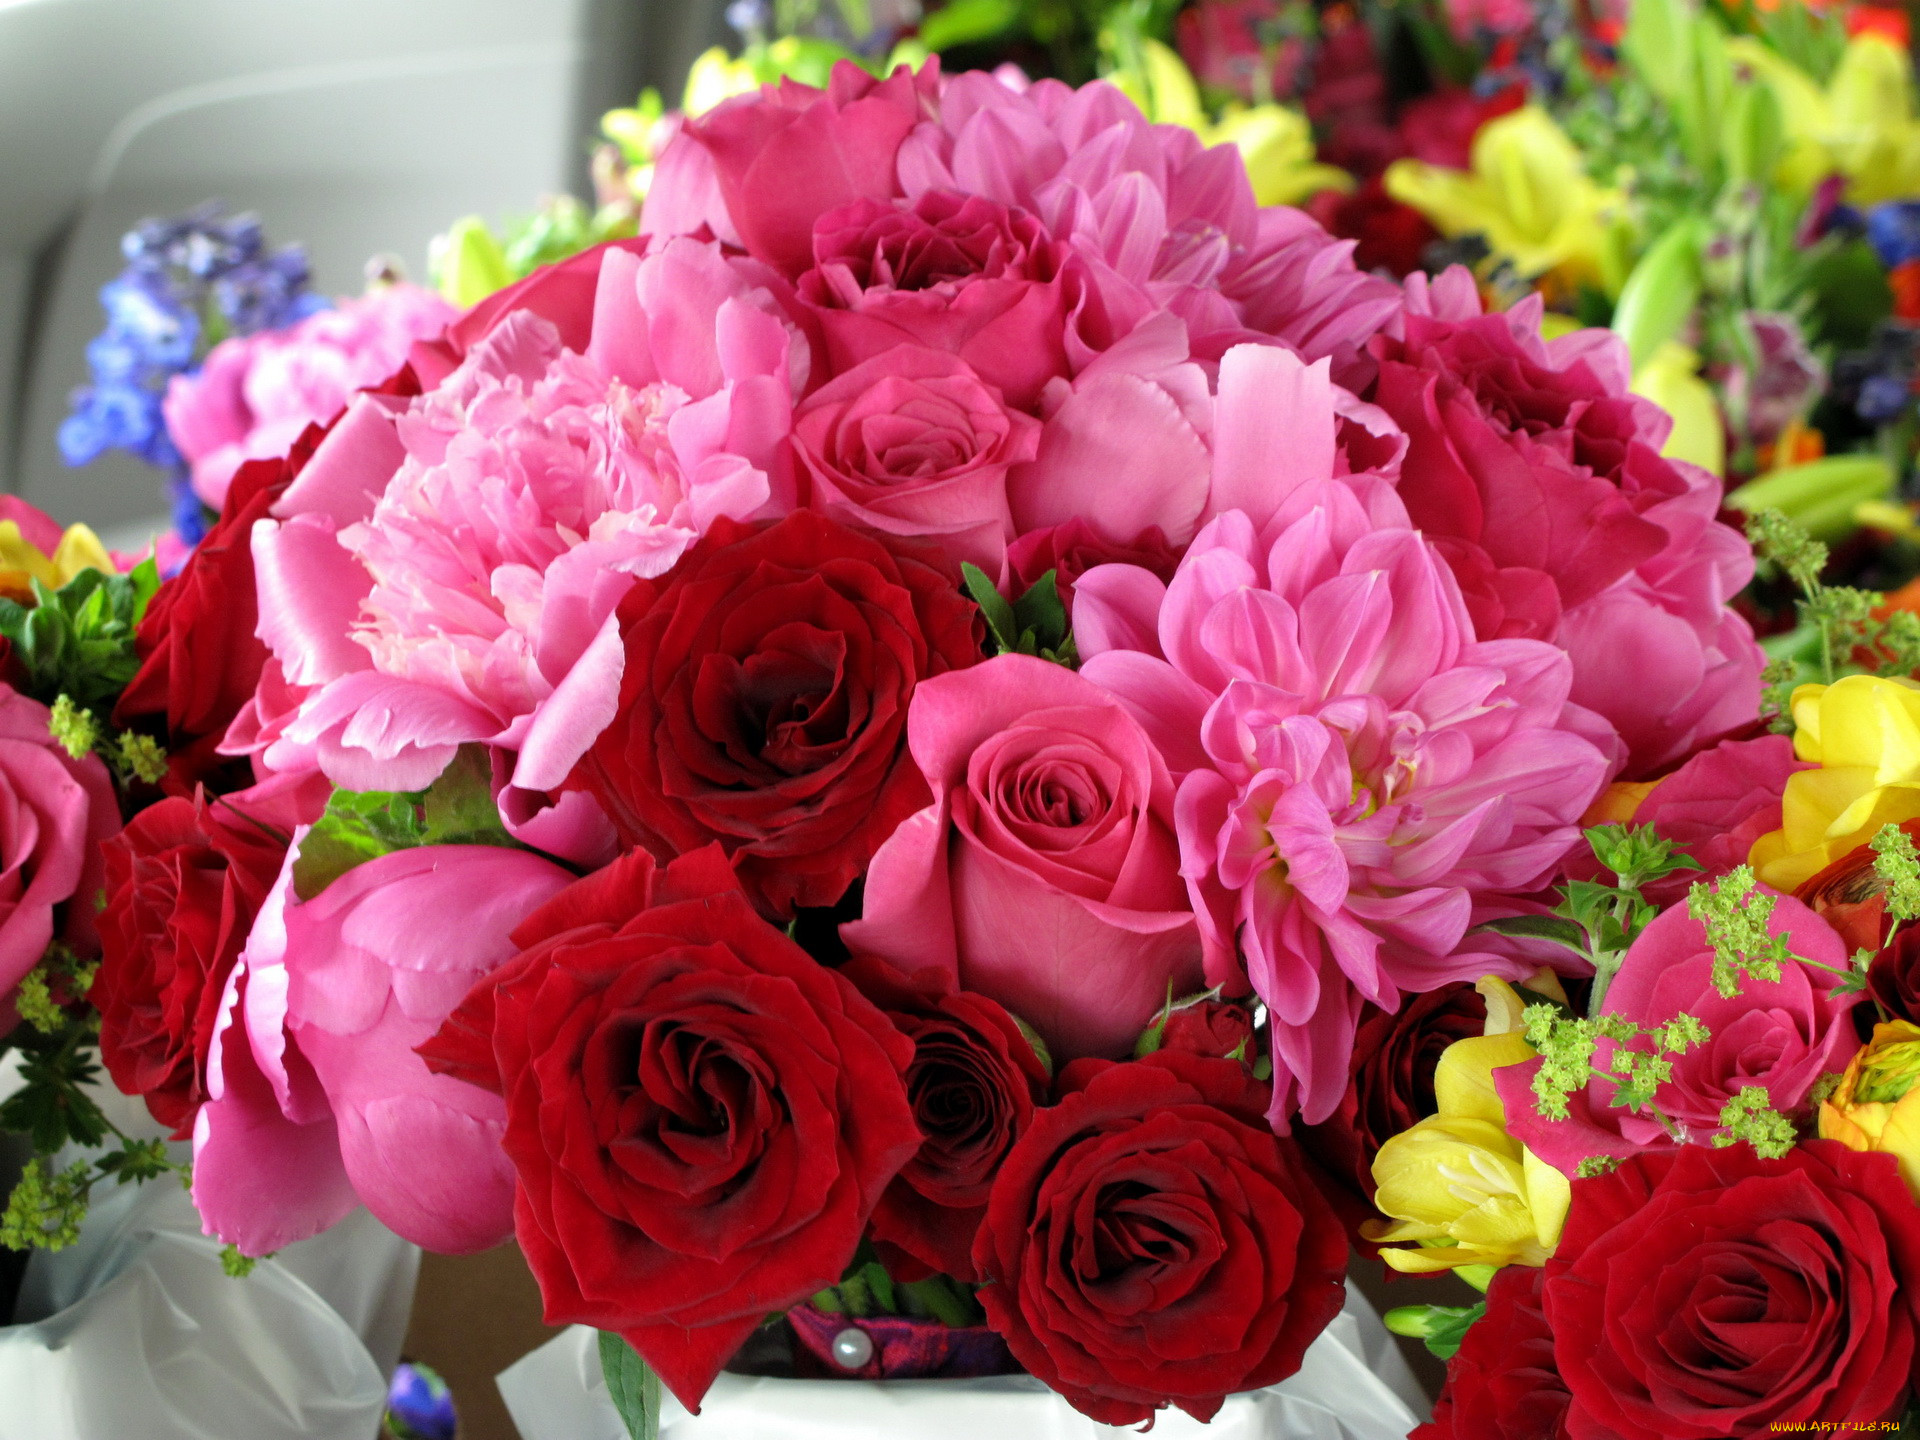 Cvety. Пионы и розы. Красивый букет. Шикарный букет цветов. Шикарные цветы.